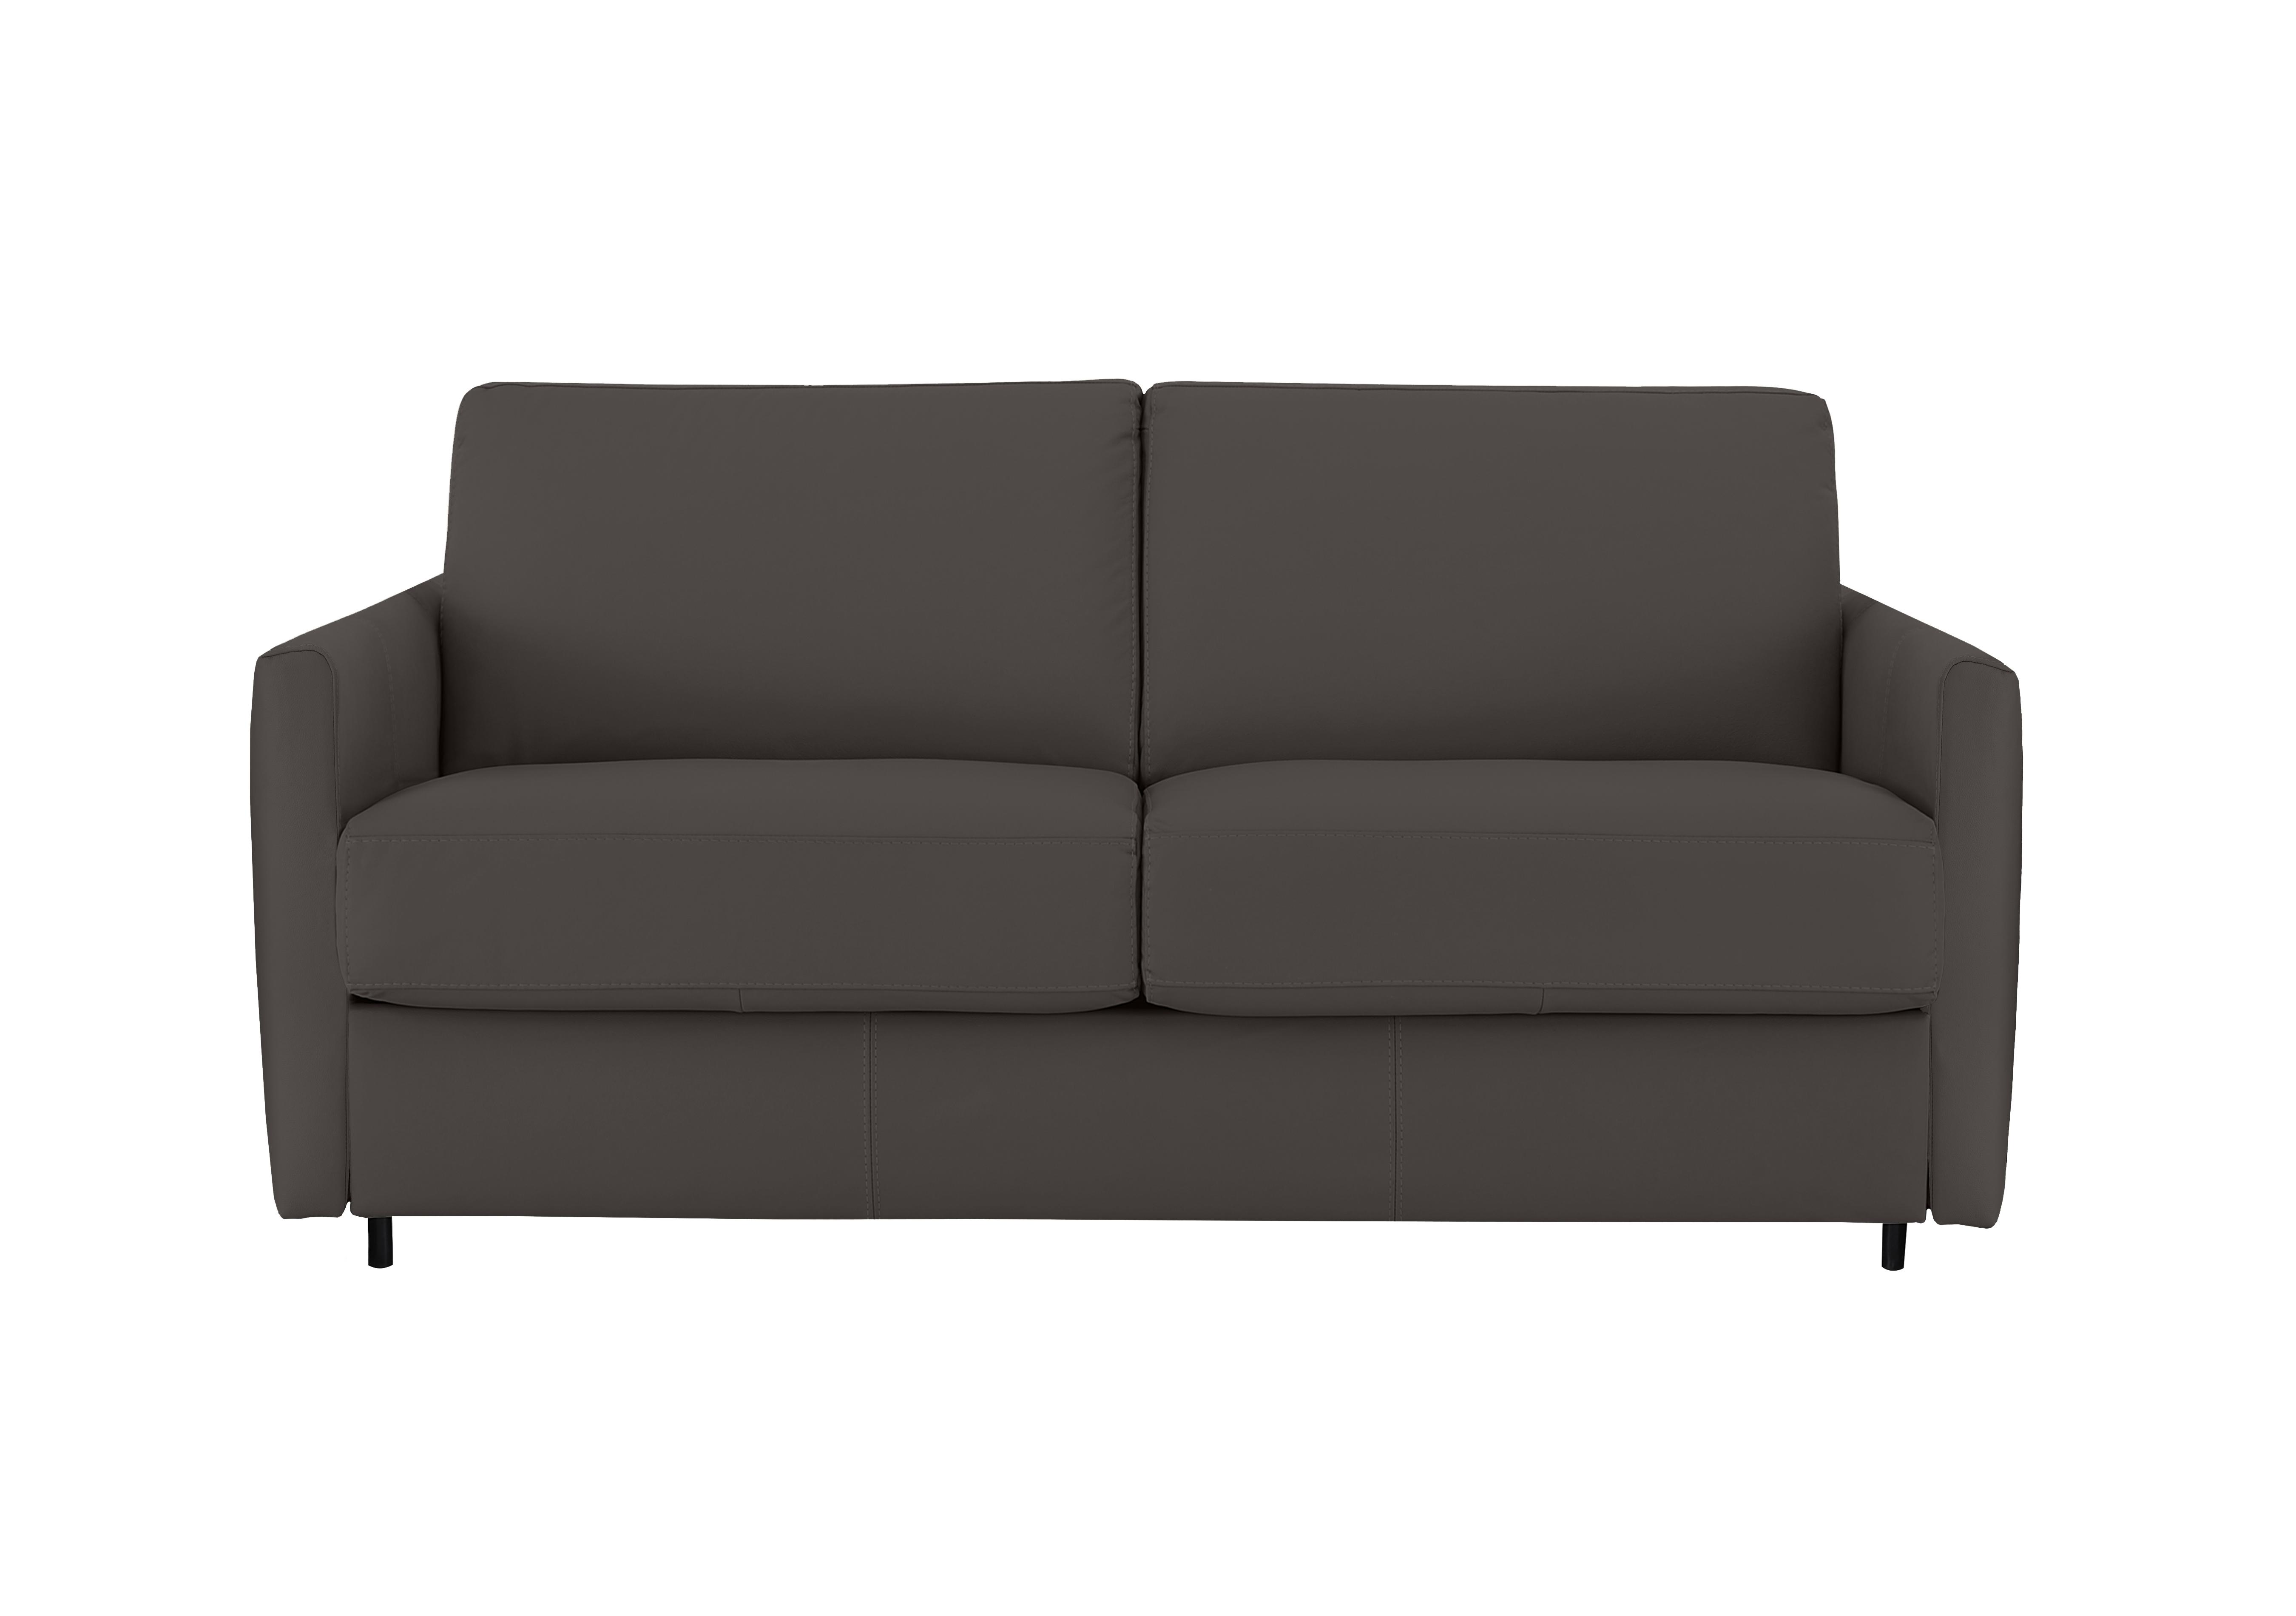 Alcova 2.5 Seater Leather Sofa Bed with Slim Arms in Torello Grigio Scuro 327 on Furniture Village